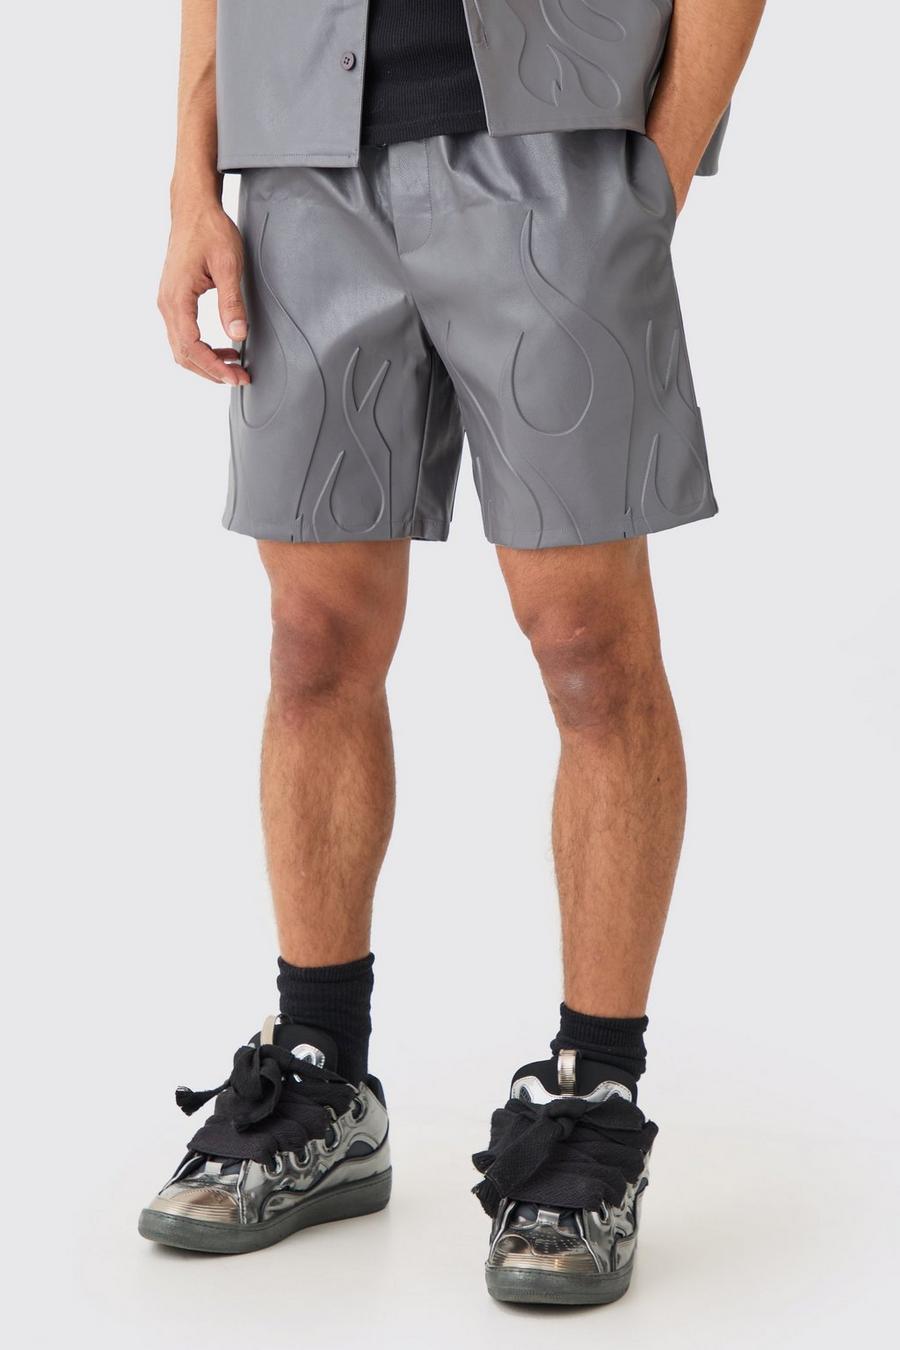 Lockere geprägte PU-Shorts mit elastischem Bund, Charcoal